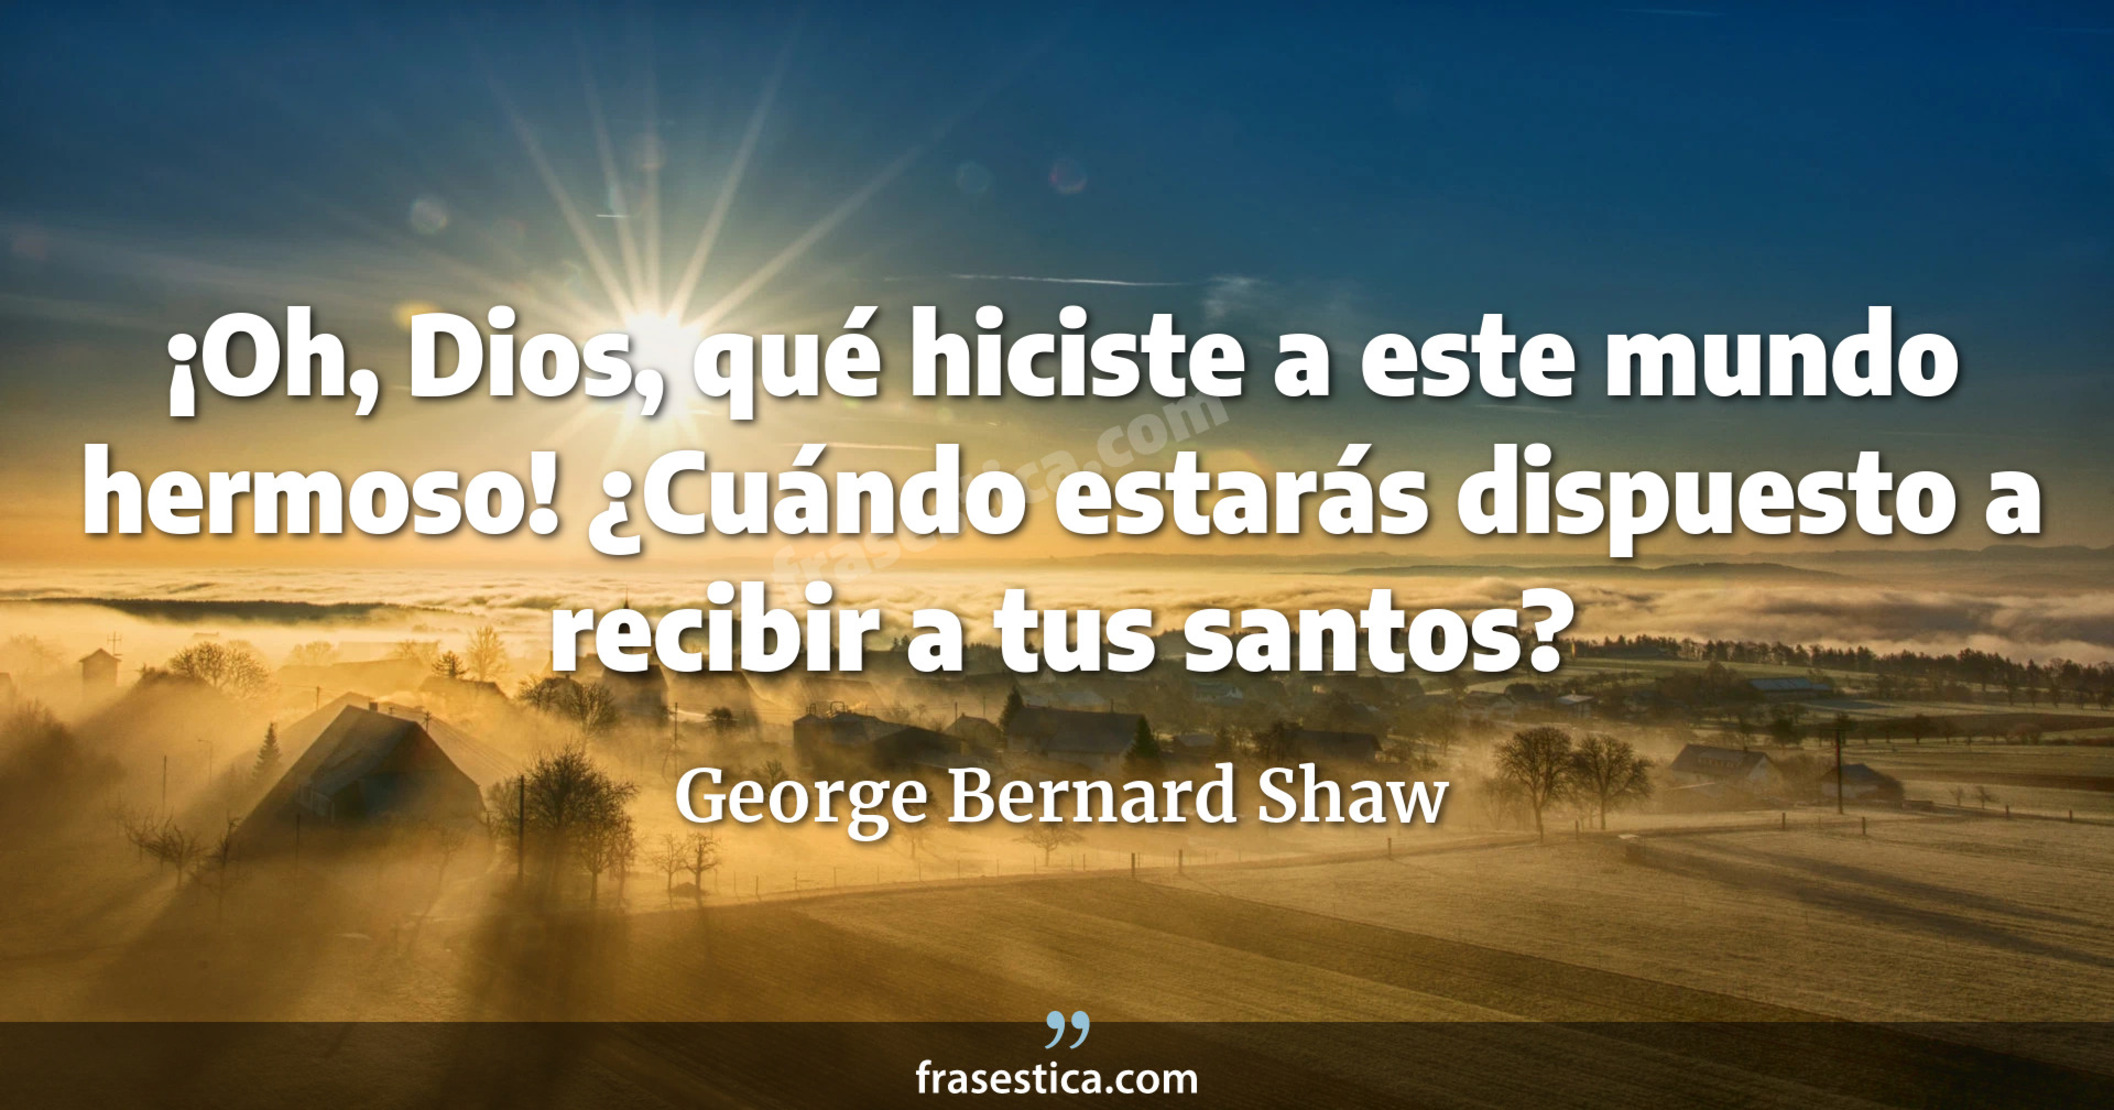 ¡Oh, Dios, qué hiciste a este mundo hermoso! ¿Cuándo estarás dispuesto a recibir a tus santos? - George Bernard Shaw